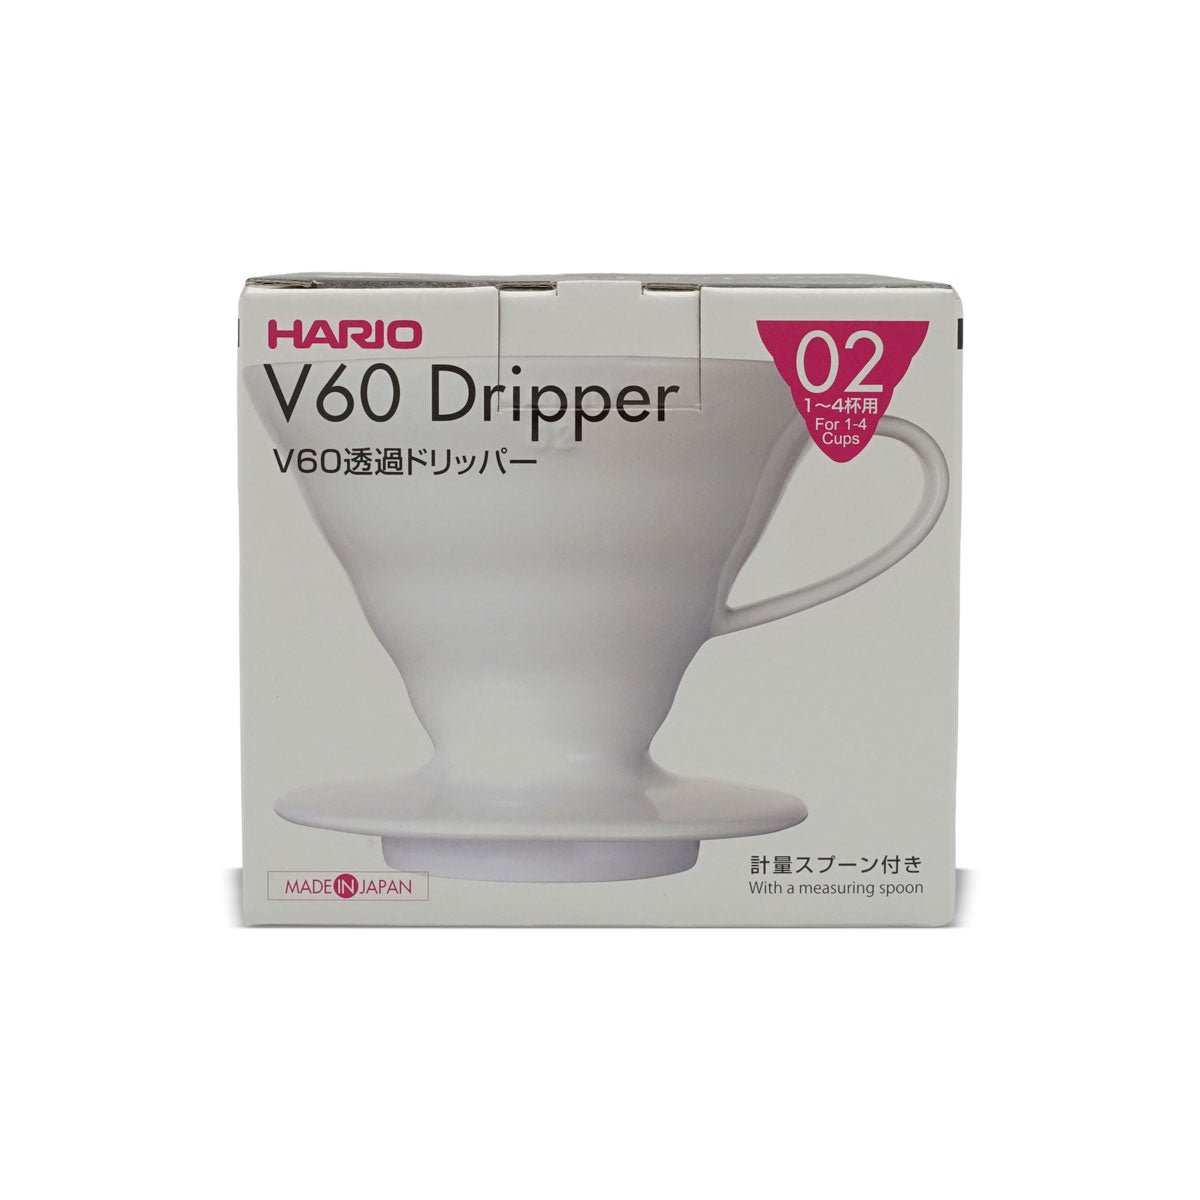 Keramikfilter Hario V60 - Eskaro - Esser Kaffeerösterei und Handelsgesellschaft mbH